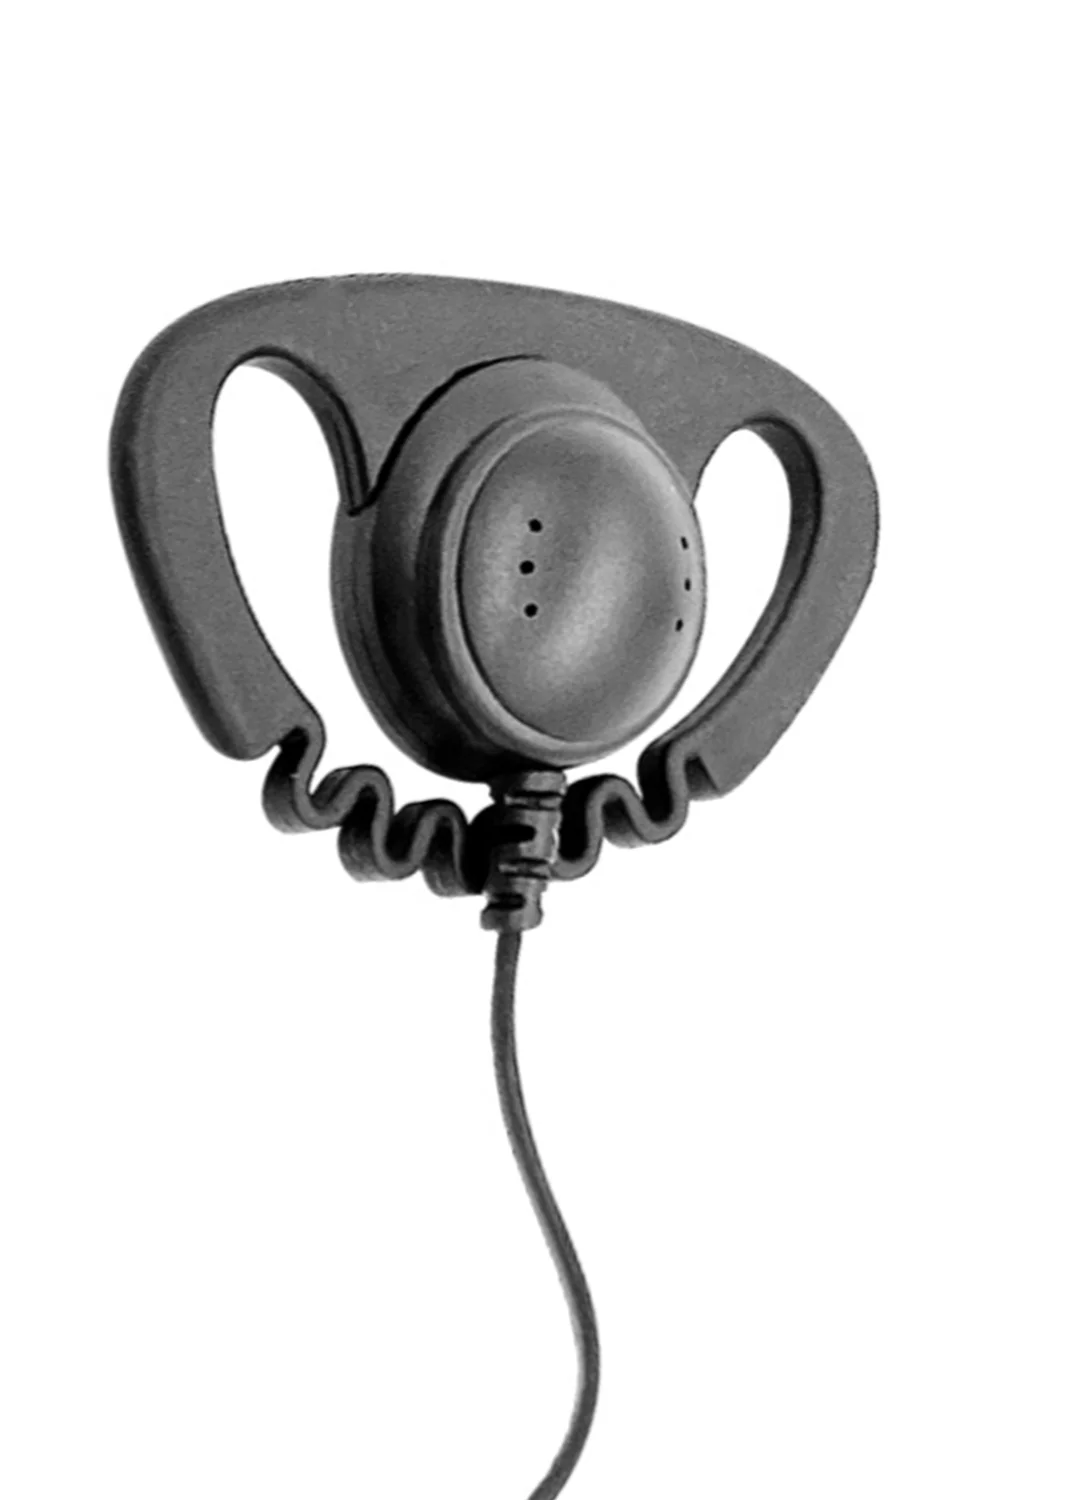 Type D ears hang walkie talkie headset Earpiece for motorola CP010,CP140,GP68,EP450,DEP450,CT150,250,450,450LS two way radios enlarge